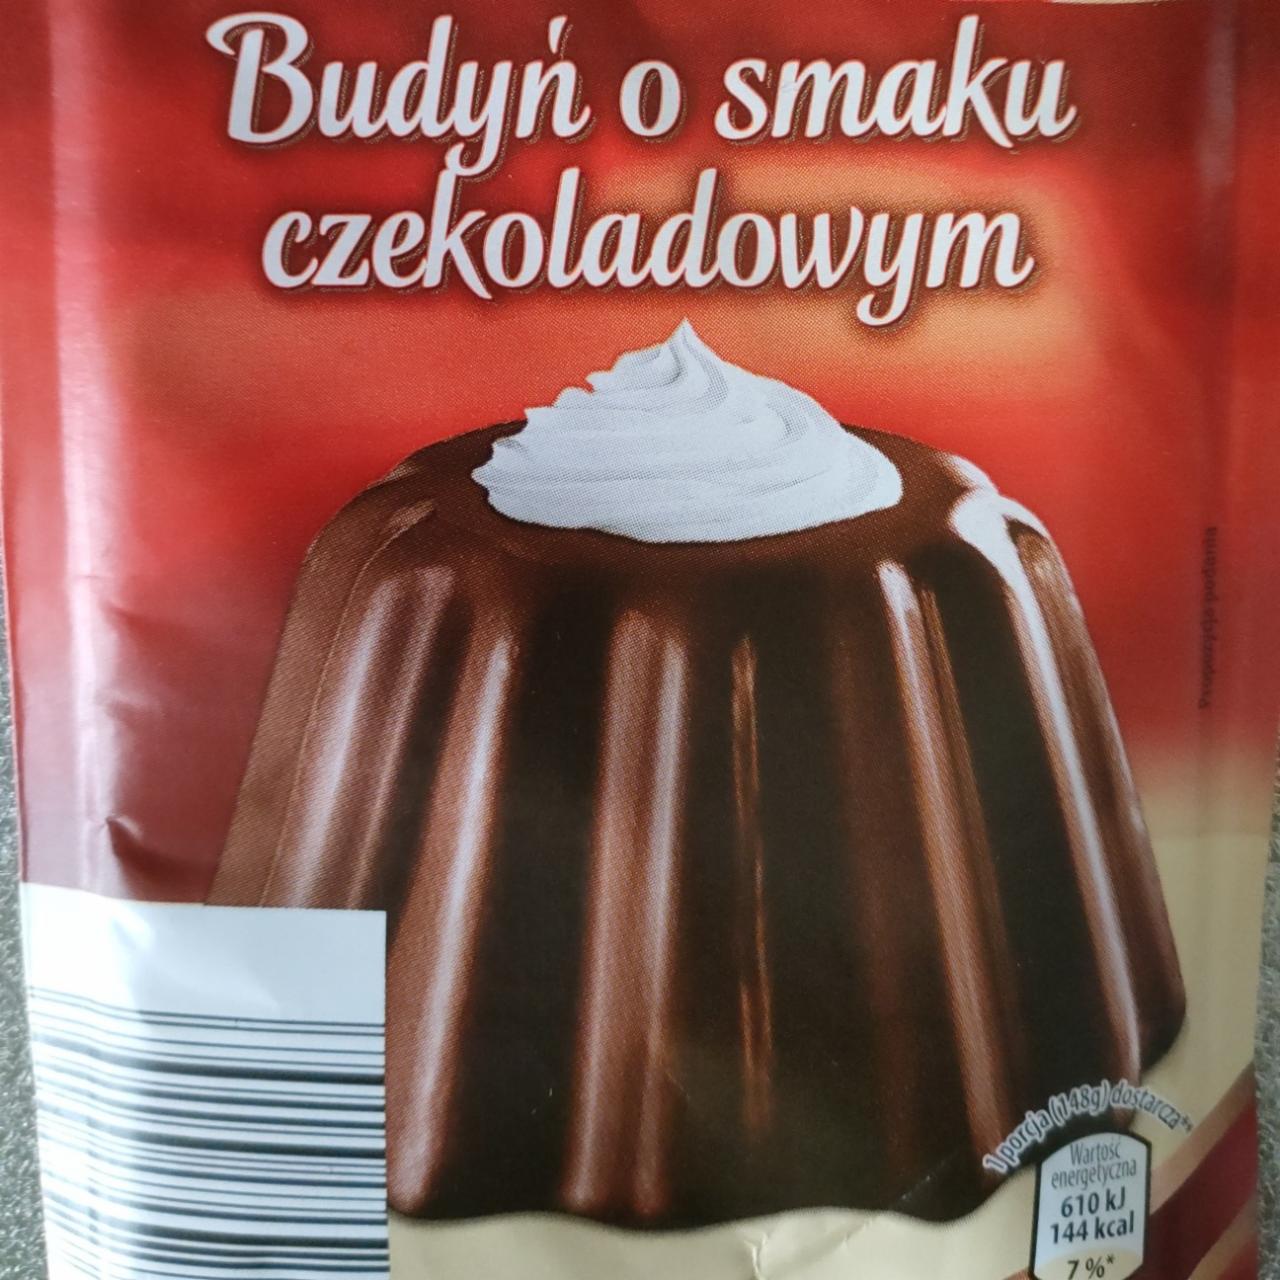 Zdjęcia - Budyń o smaku czekoladowym Albona